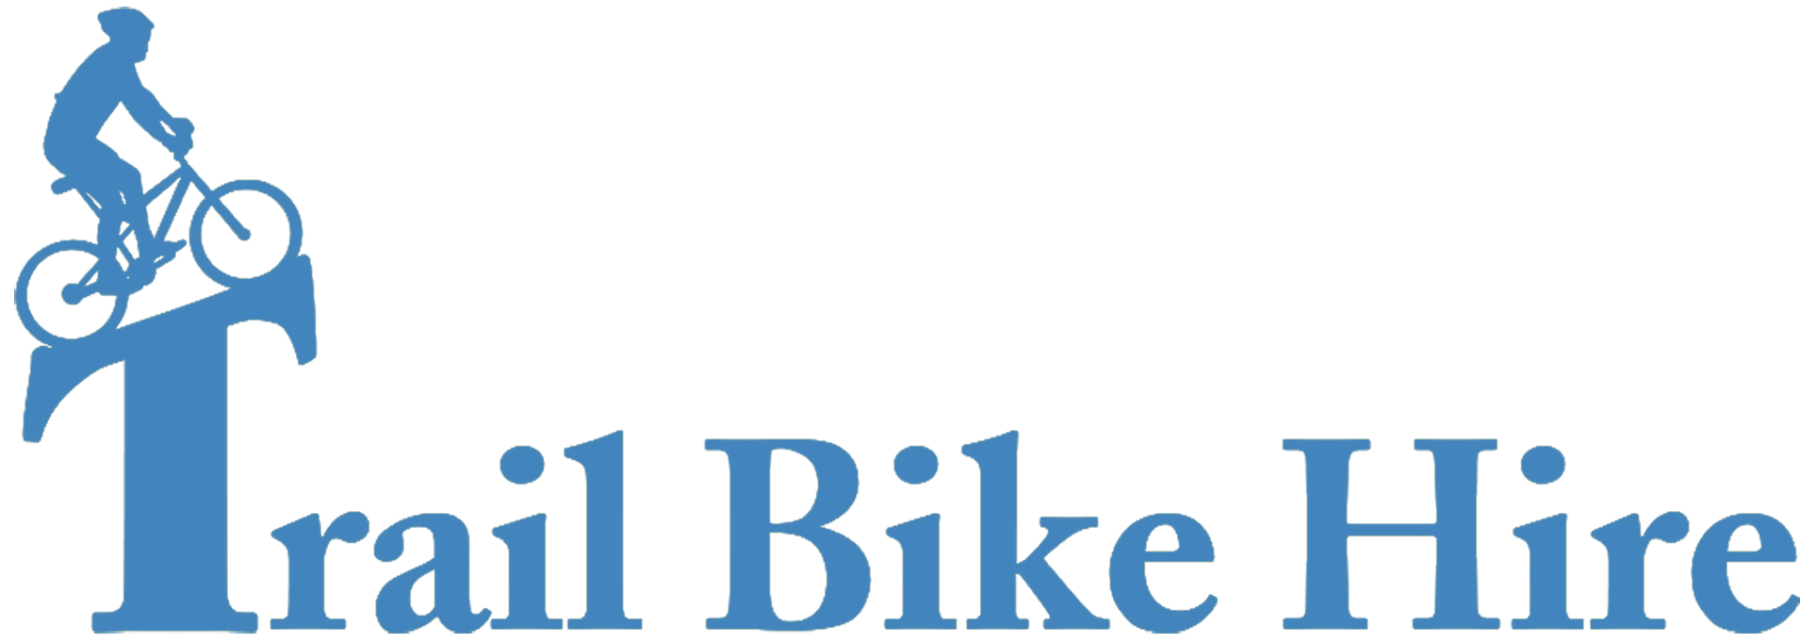 Trail Bike Hire Header Logo